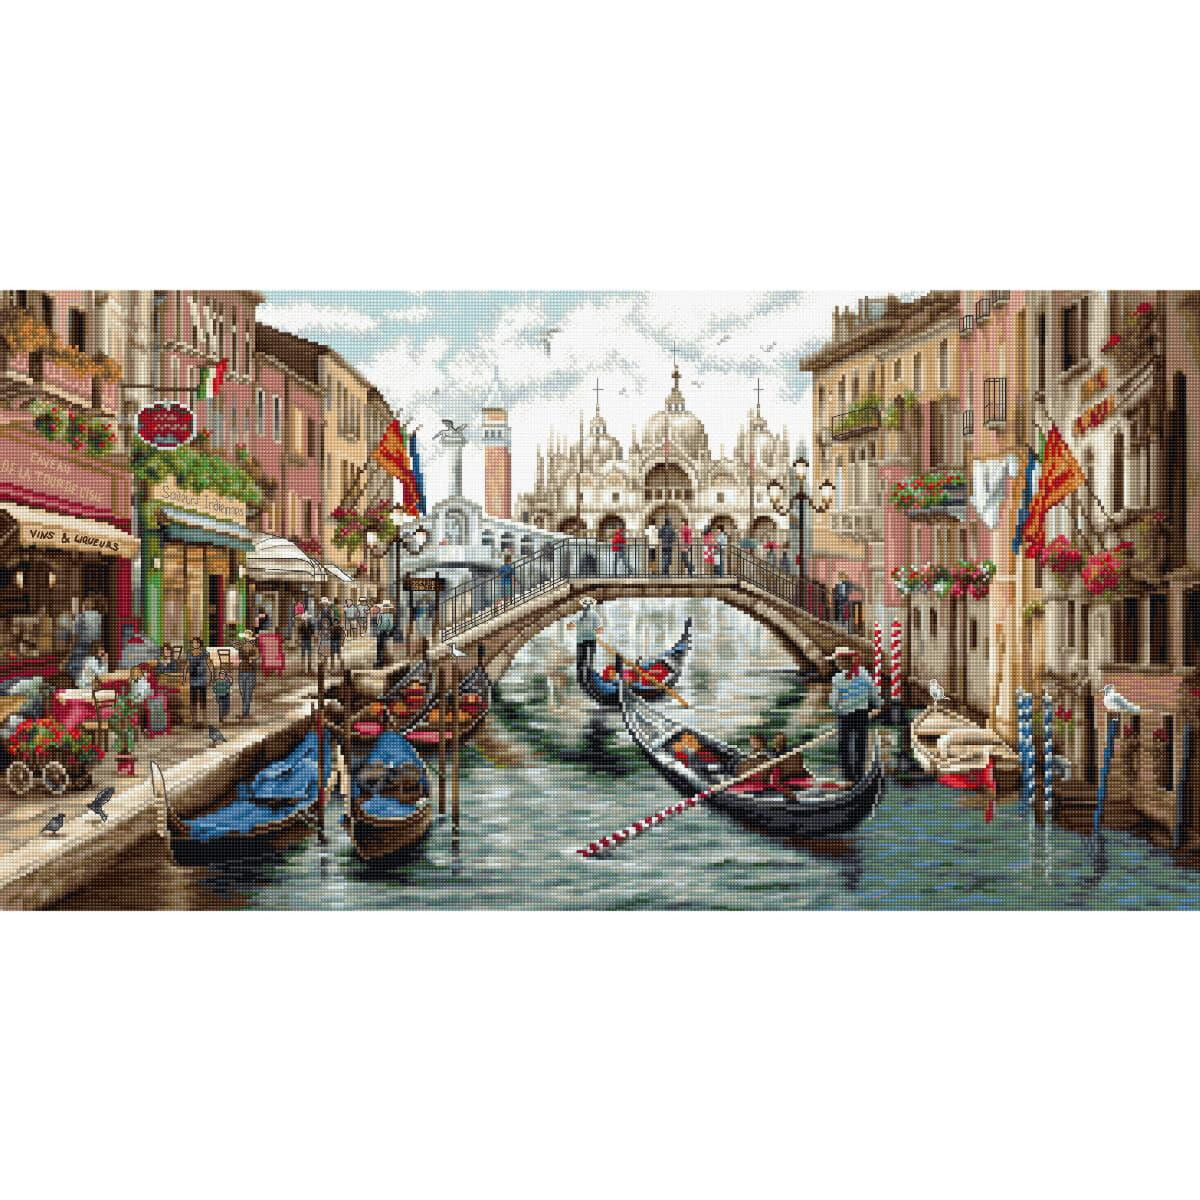 Une scène de canal animée à Venise...